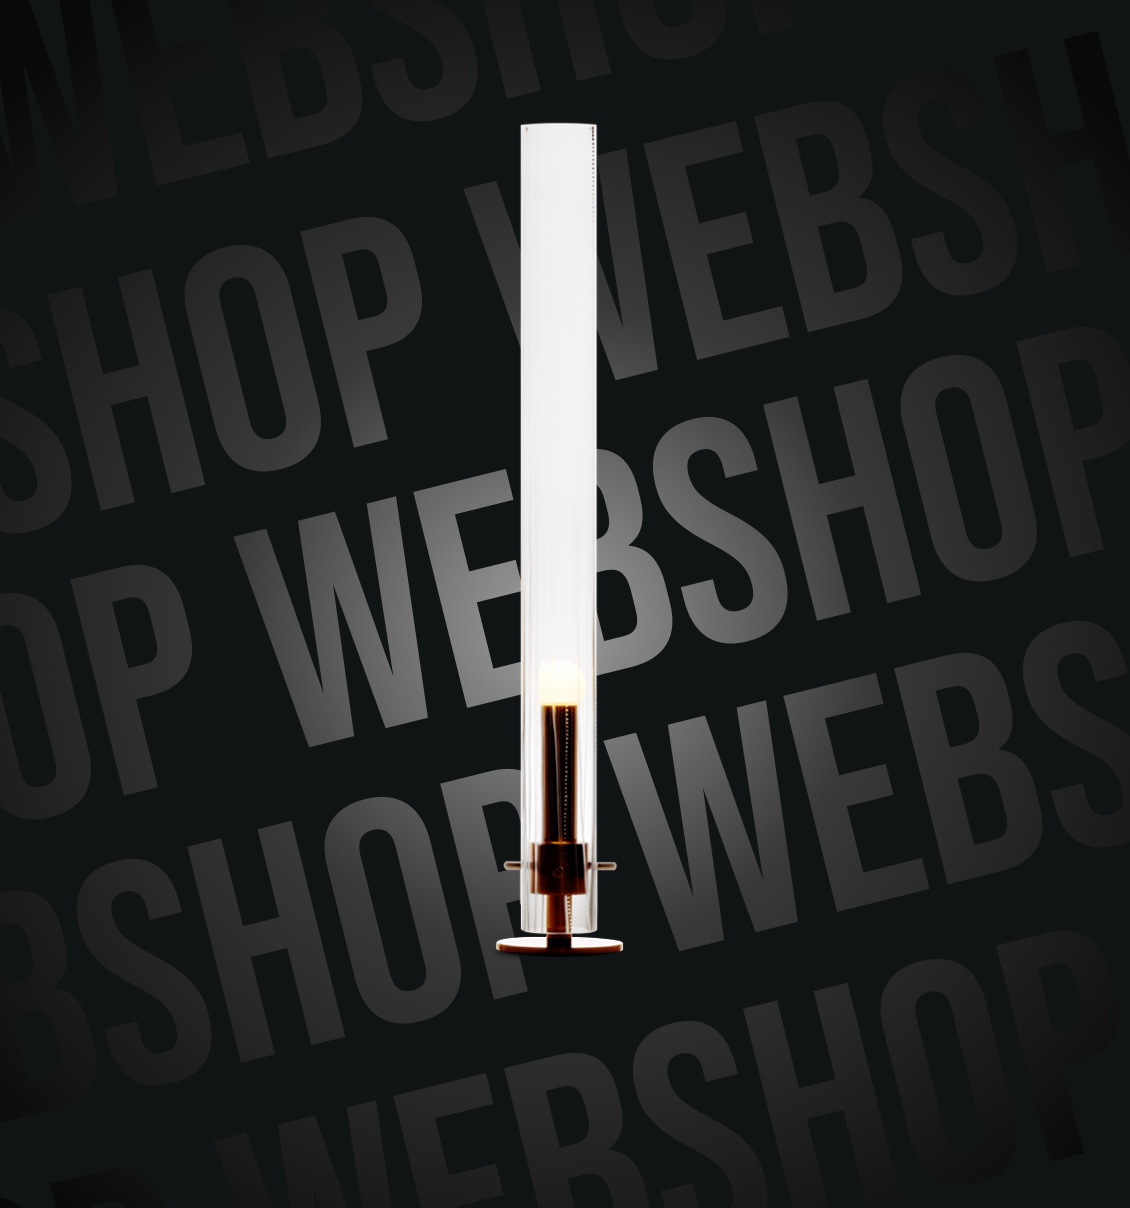 W&S Digitalagentur Projekt Shopware Shop Wesenlicht